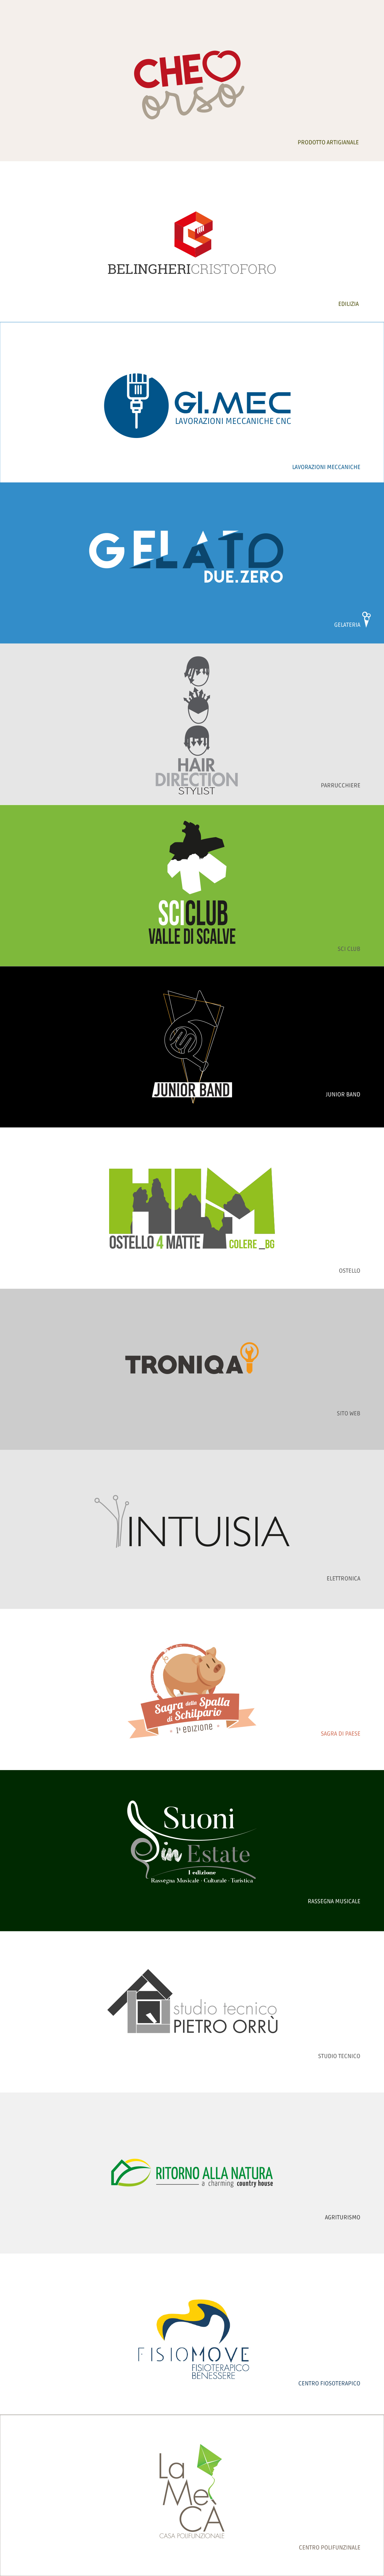 logodesign graphic ideas logo grafica